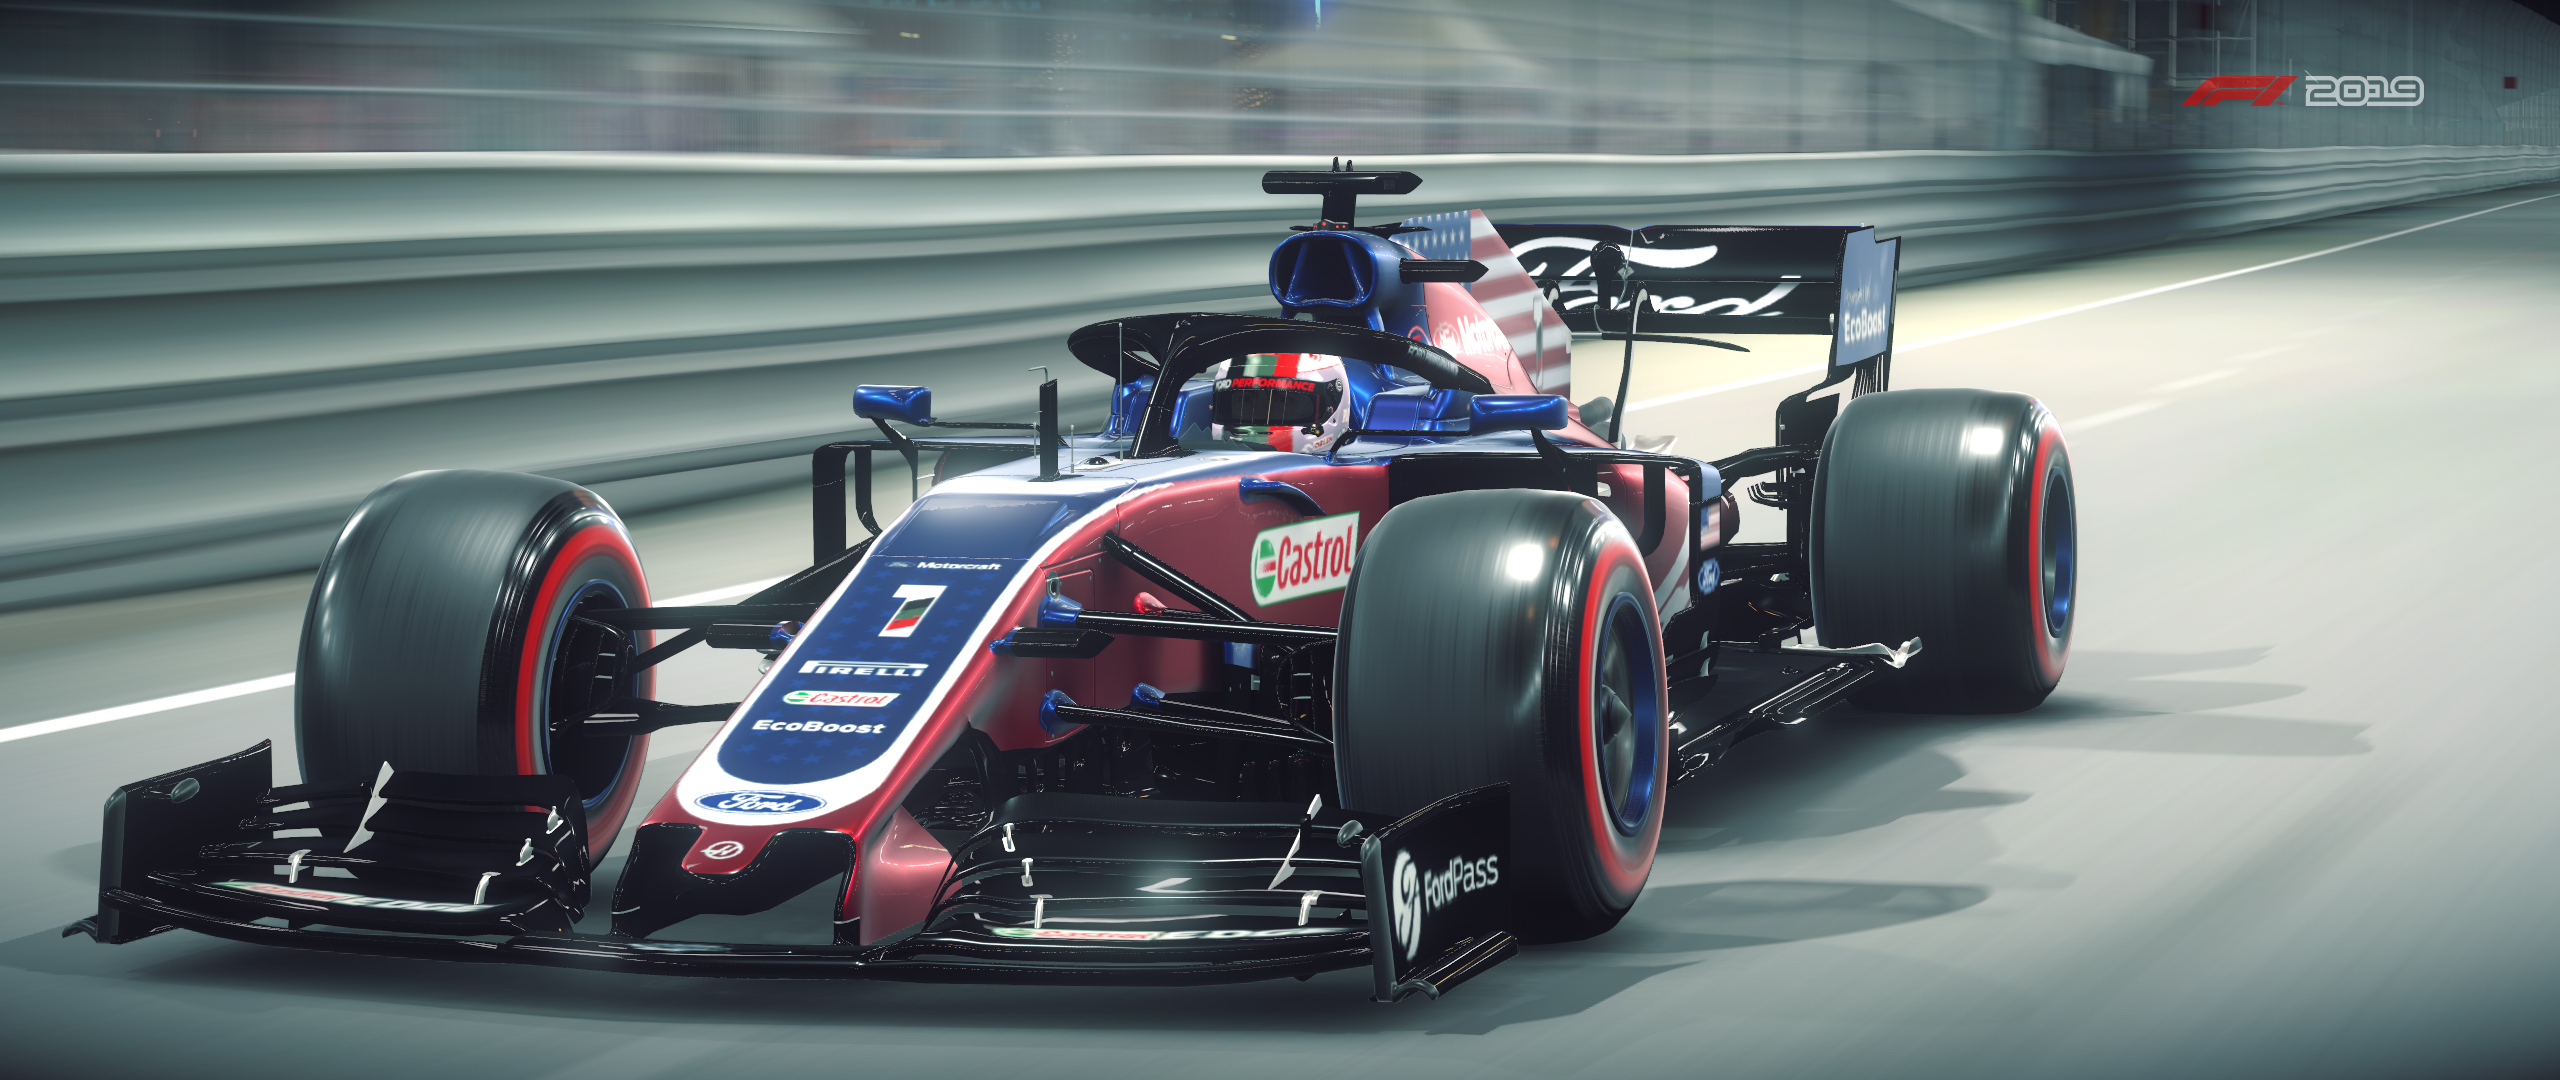 F1 2019 Screenshot 2020.02.24 - 13.33.43.57.jpg